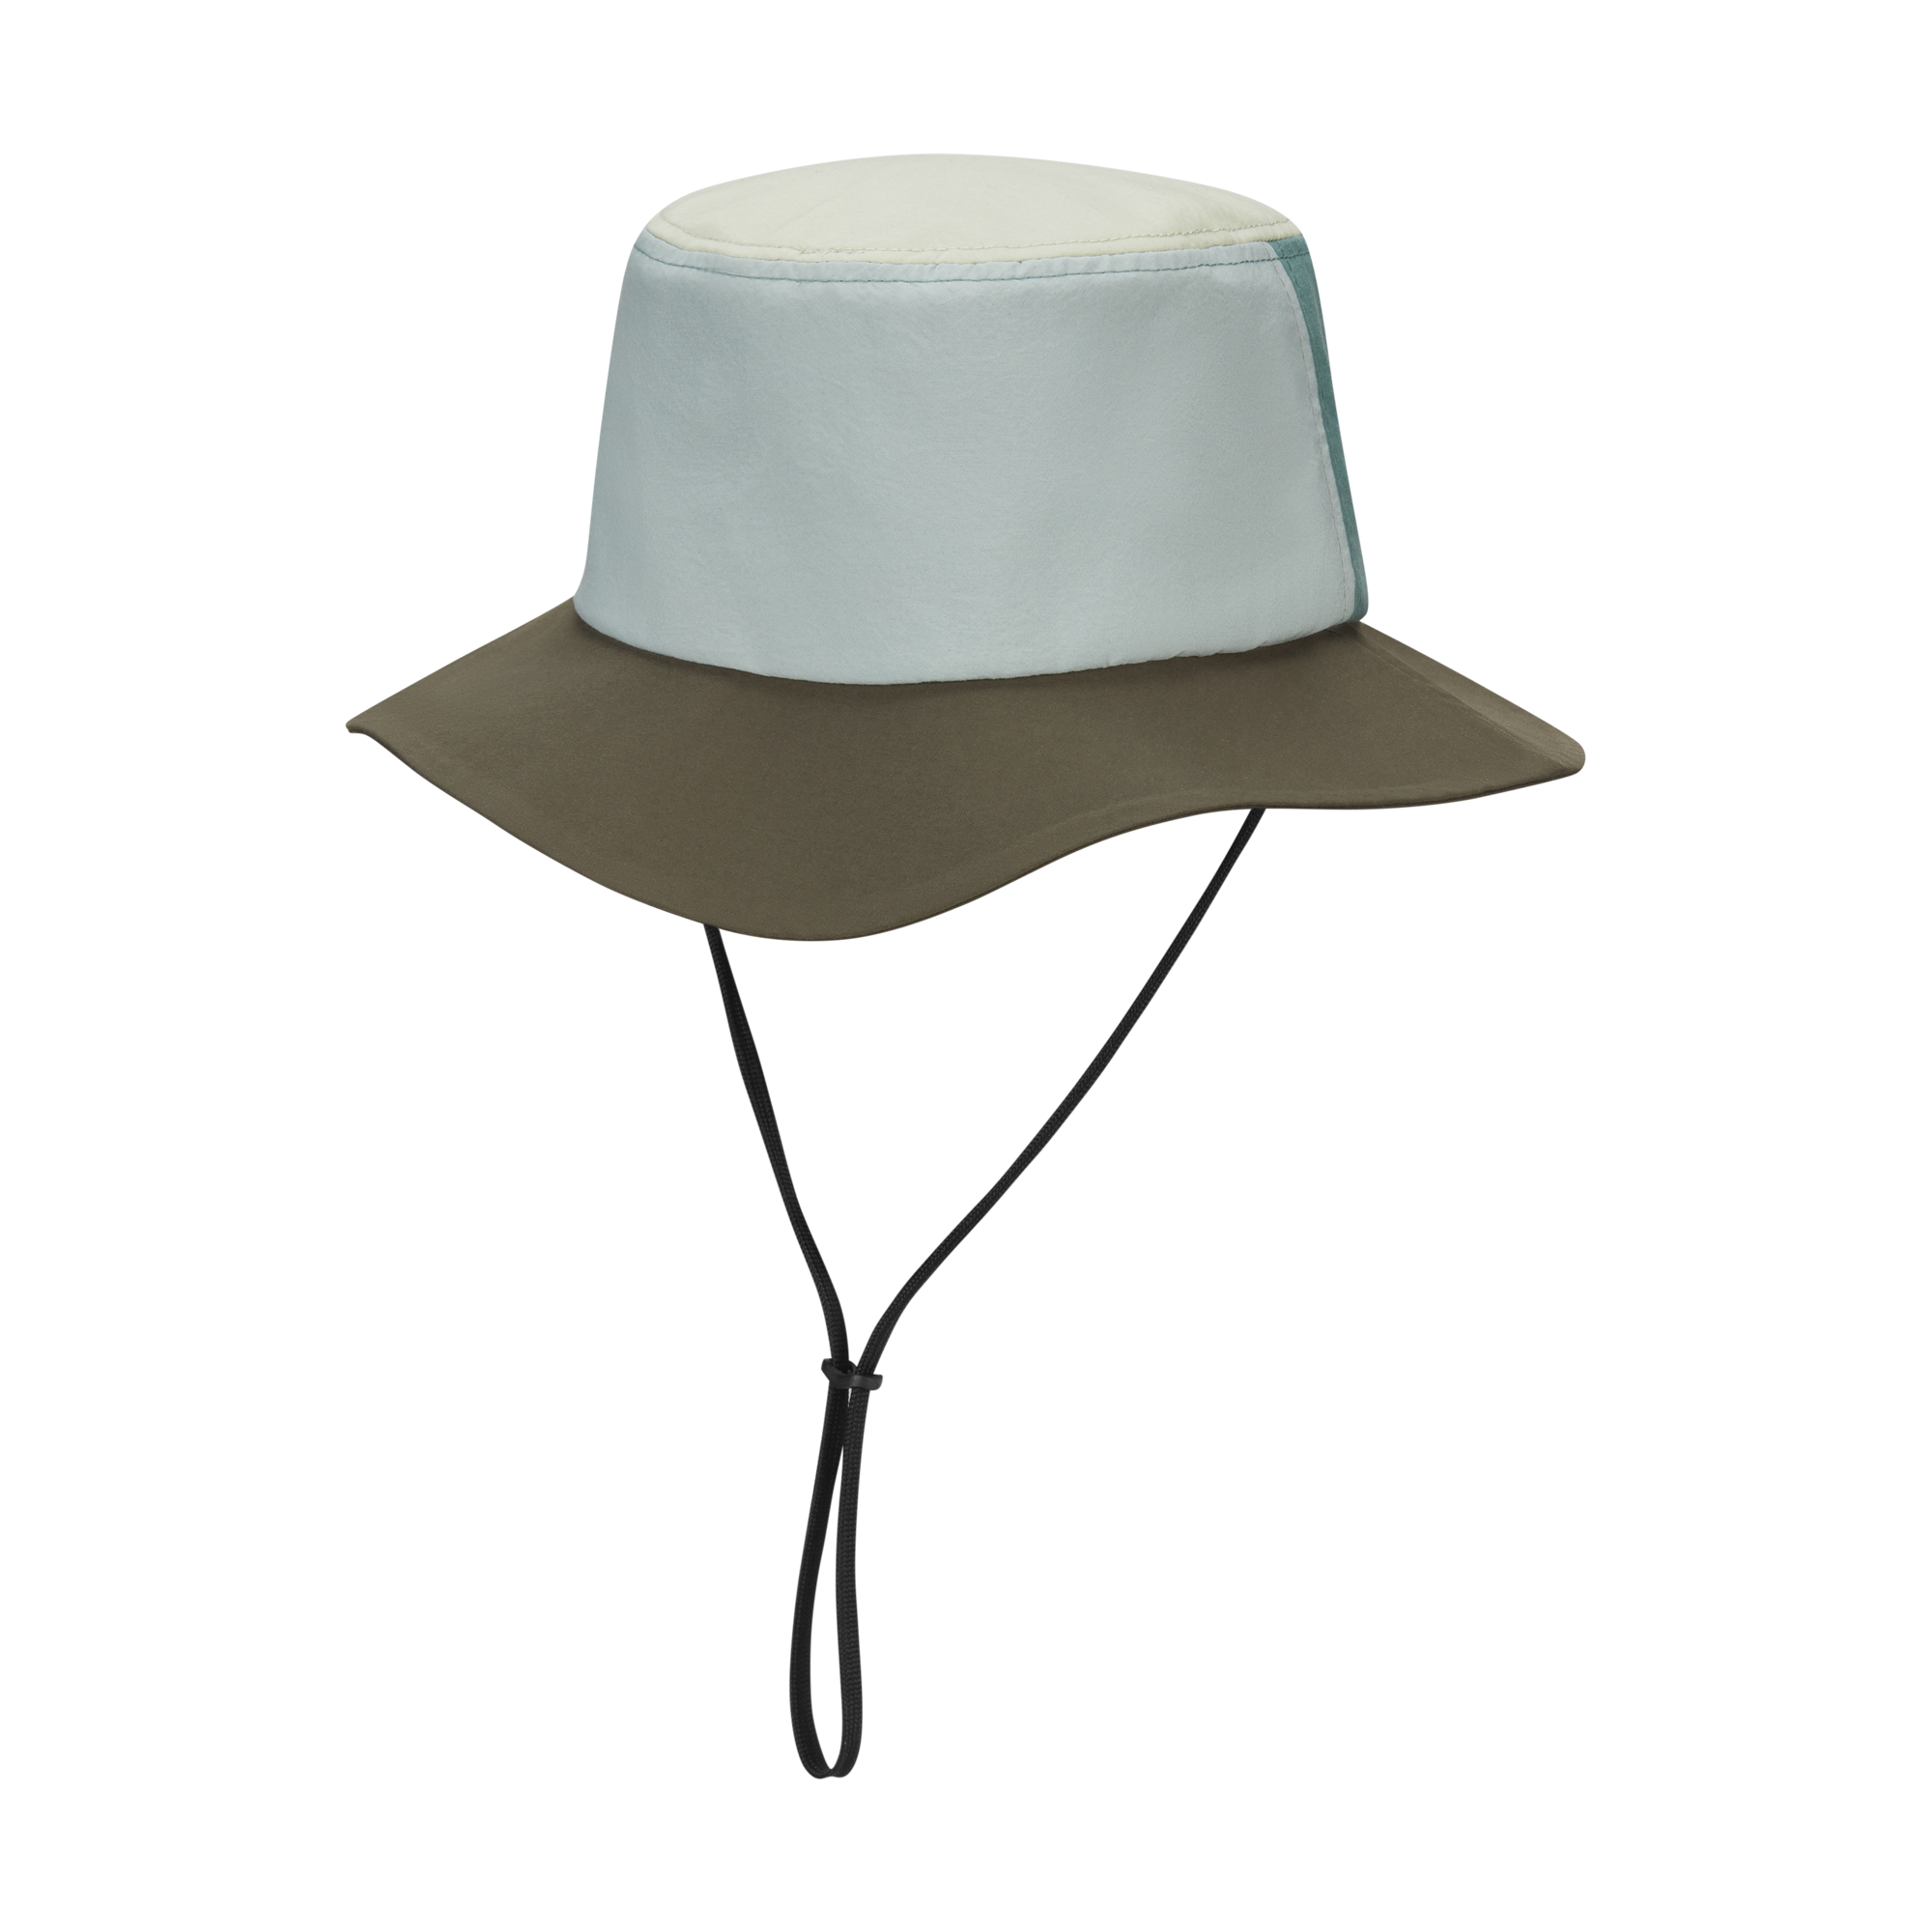 Nike S Bucket Hat Navy, Size M/L